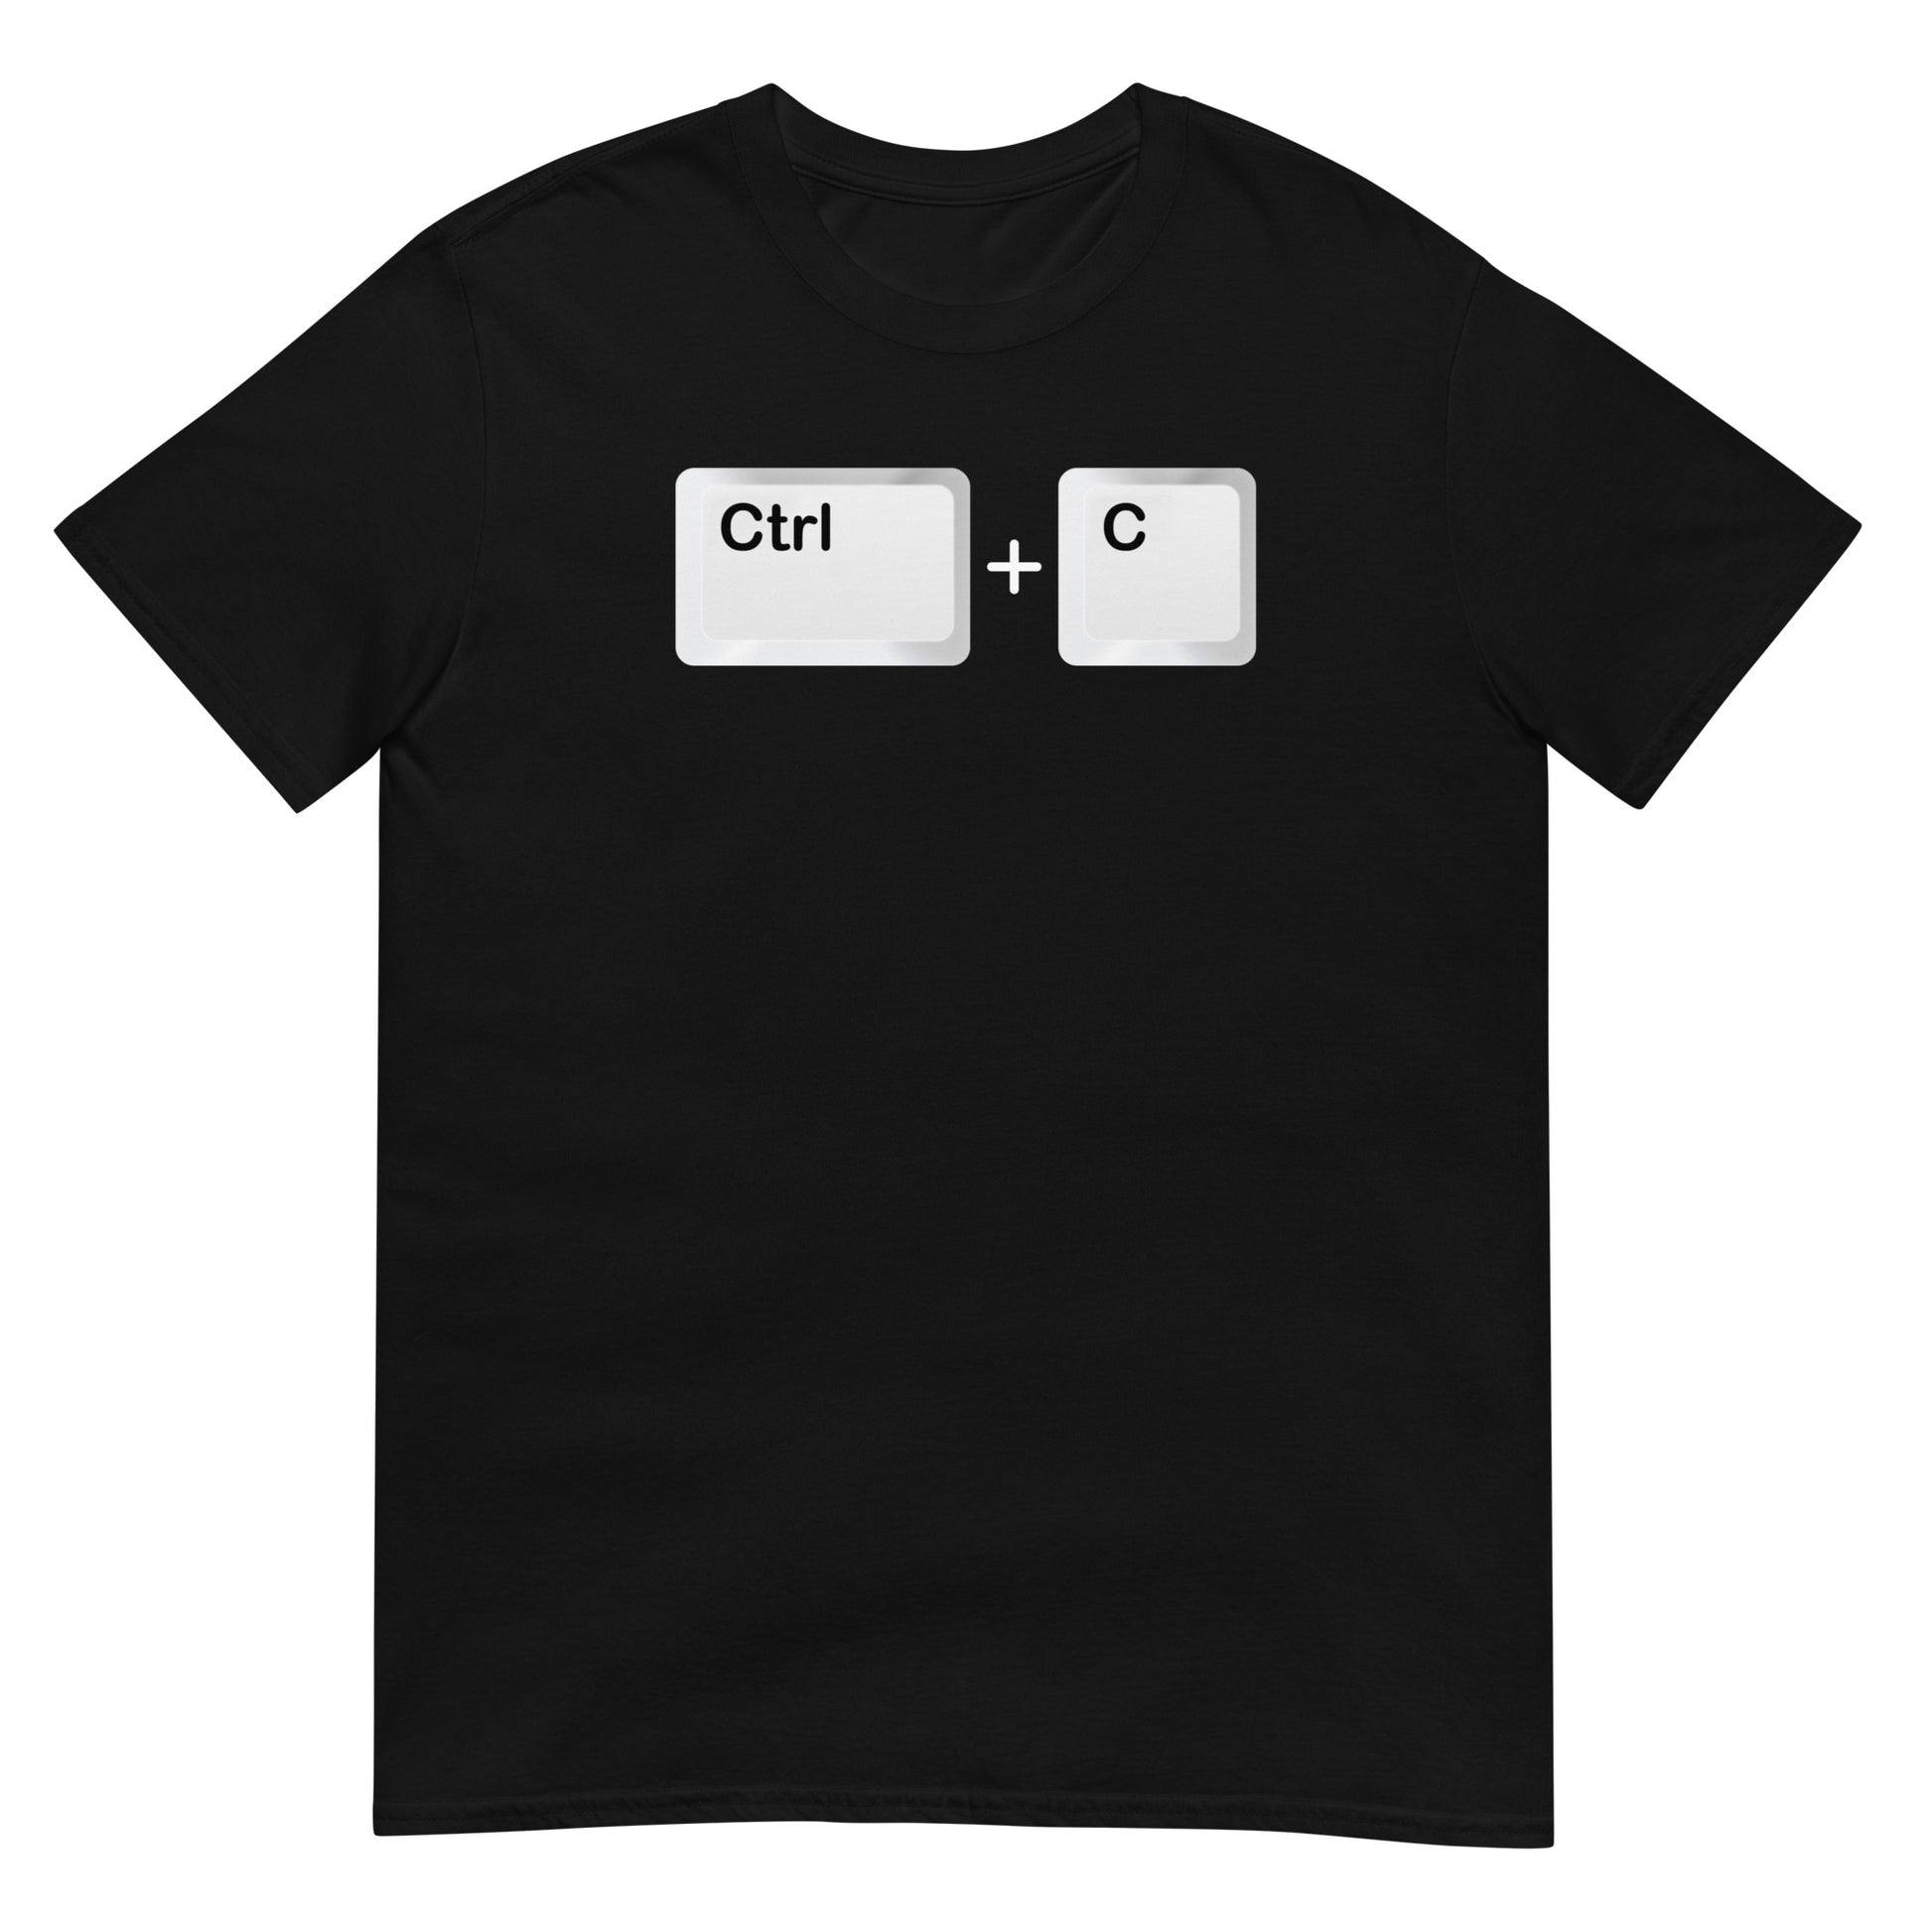 Camiseta con el comando Ctrl C - Copiar. Color negro.